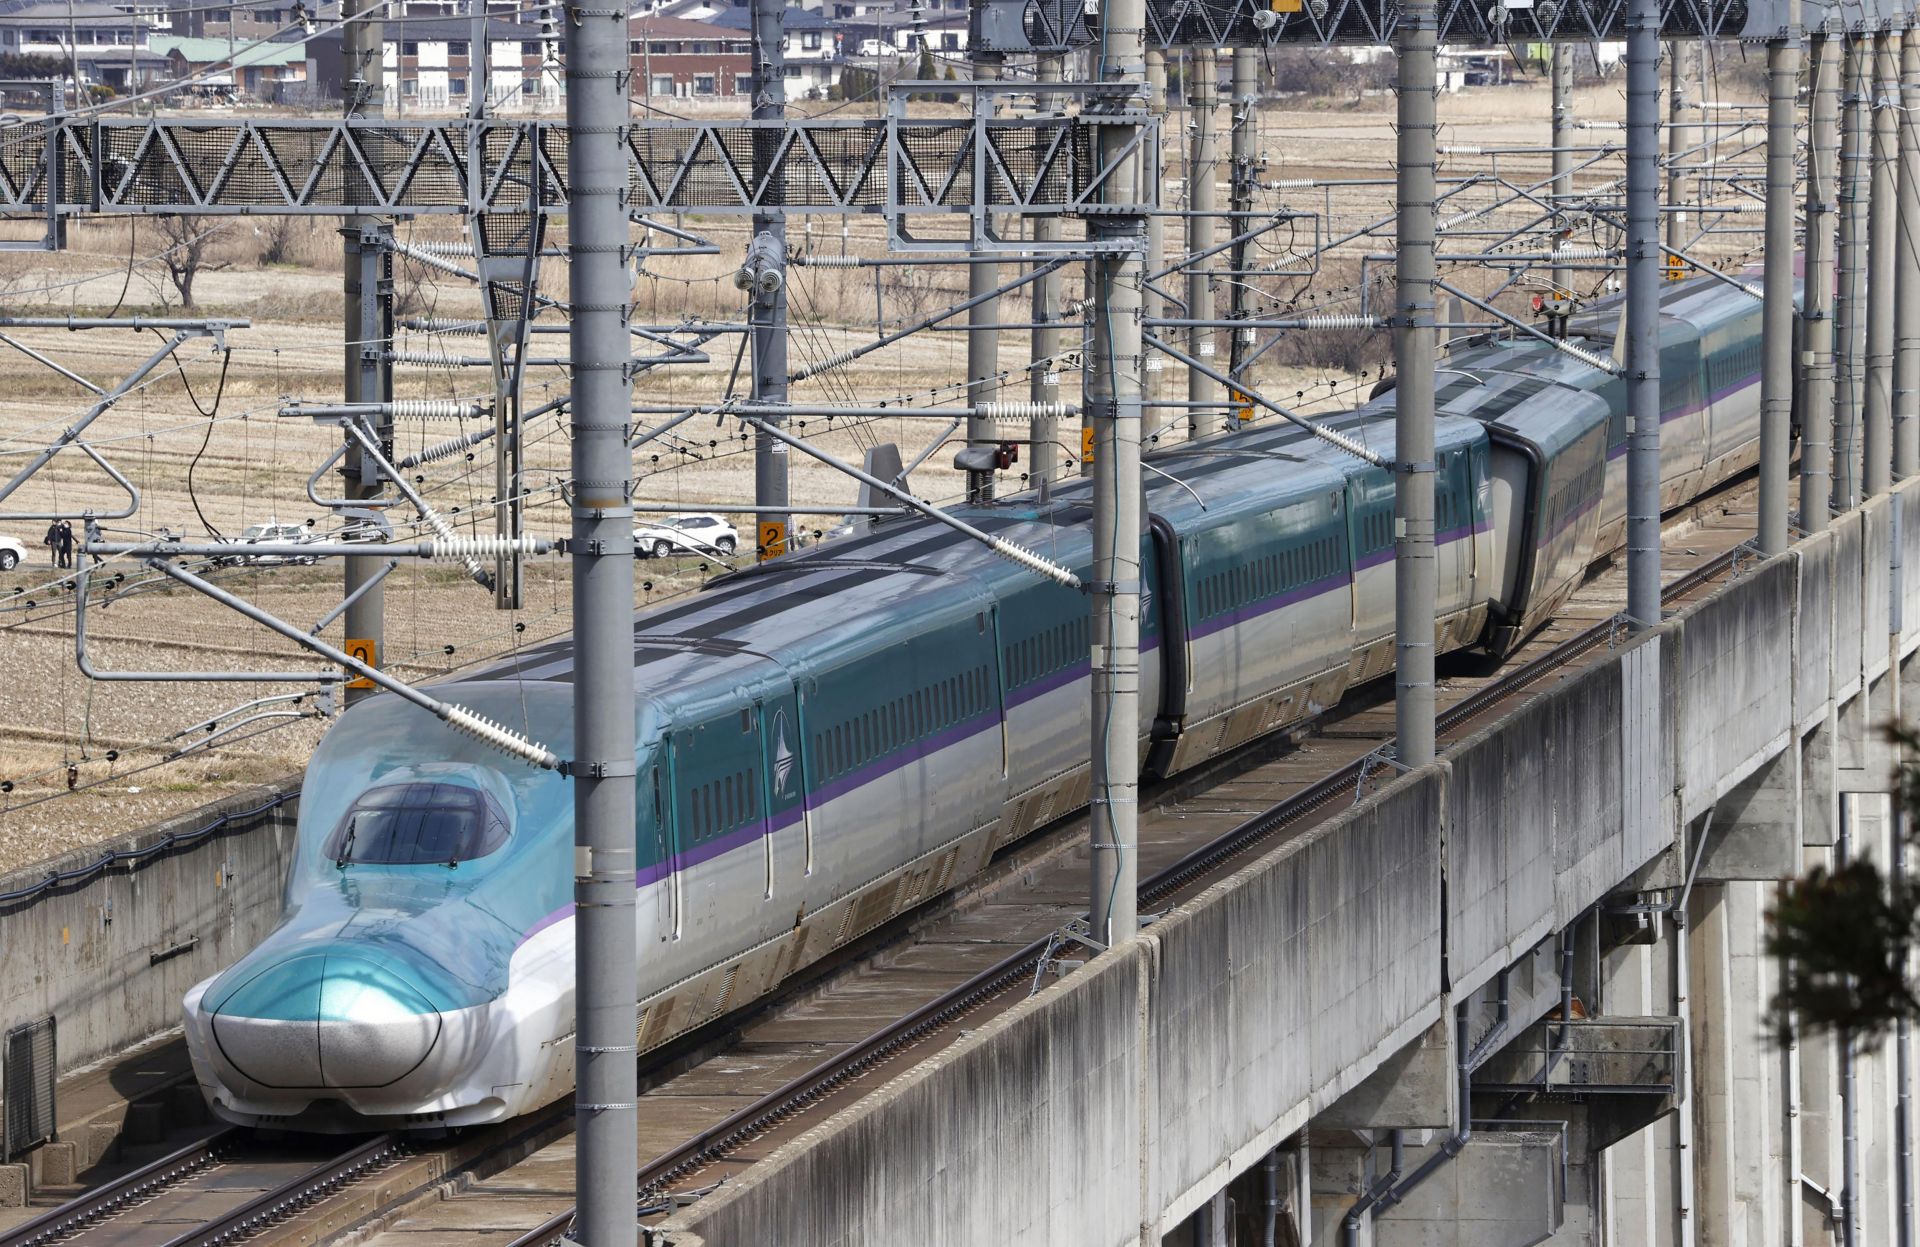  Бърз влак дерайлира в префектура Мияги по време на труса в Северна Япония, който разтърси крайбрежието 